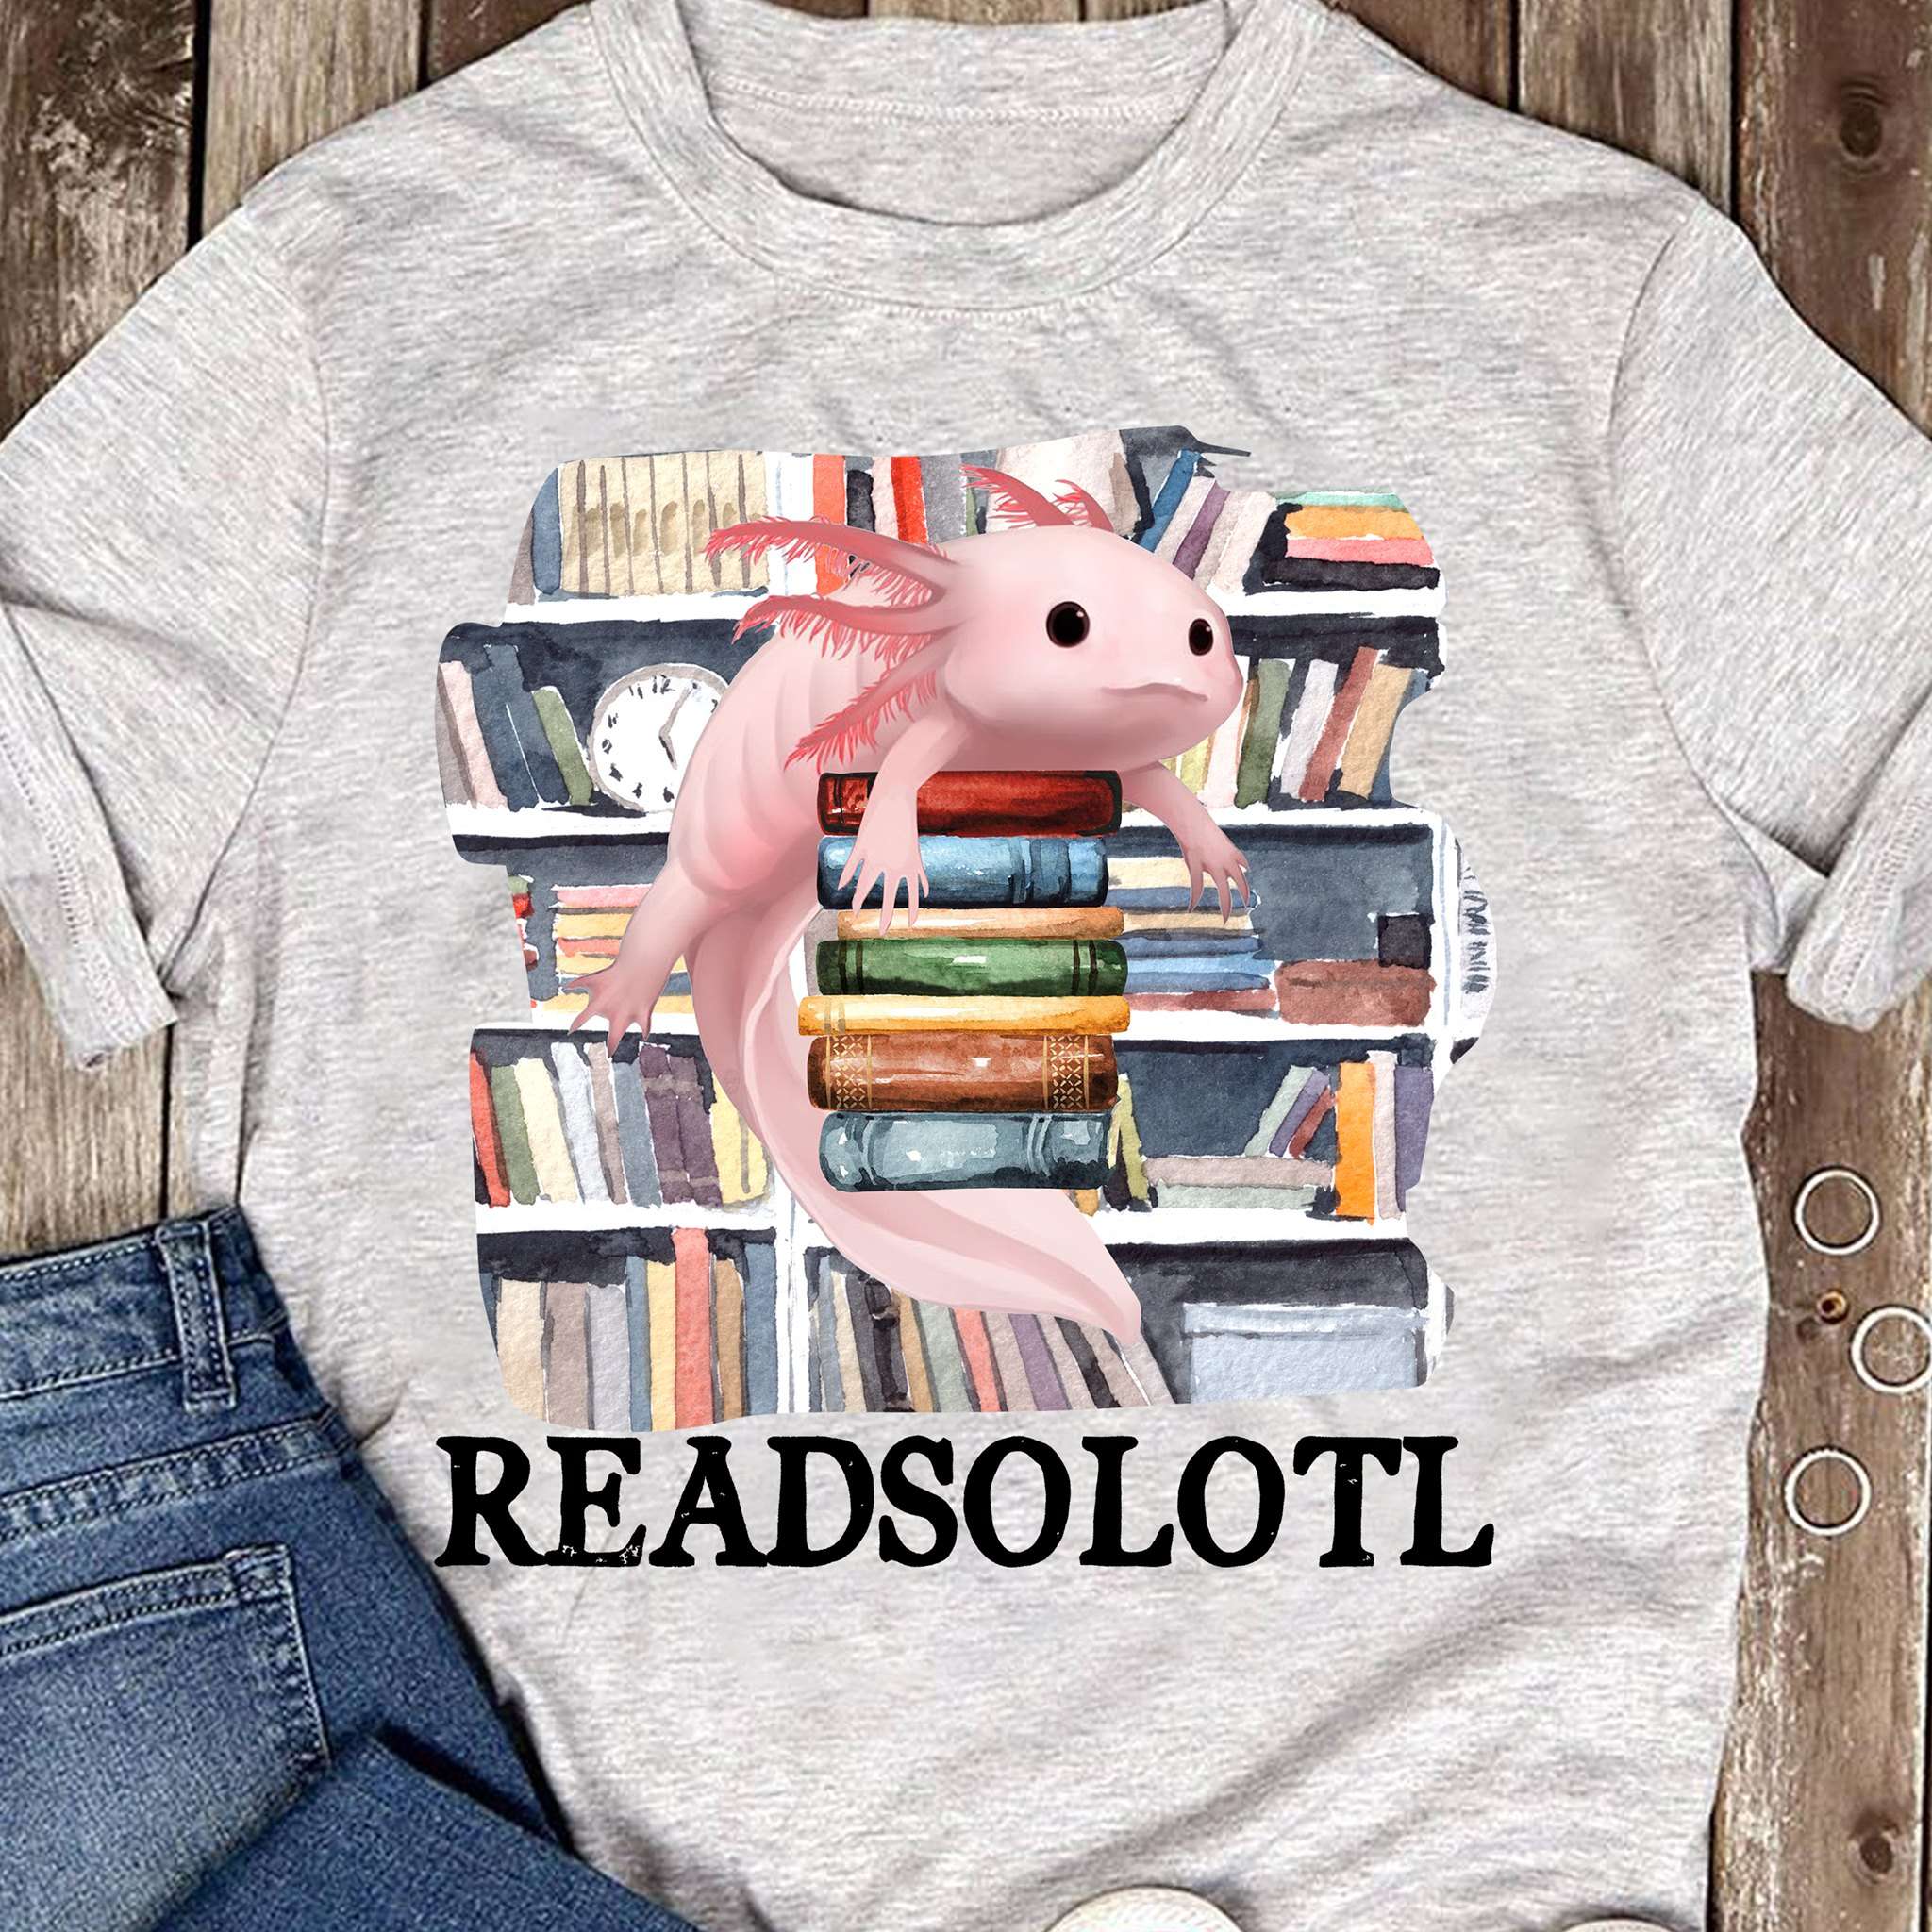 Readsolotl animal - Axolotl and book, gift for bookaholic